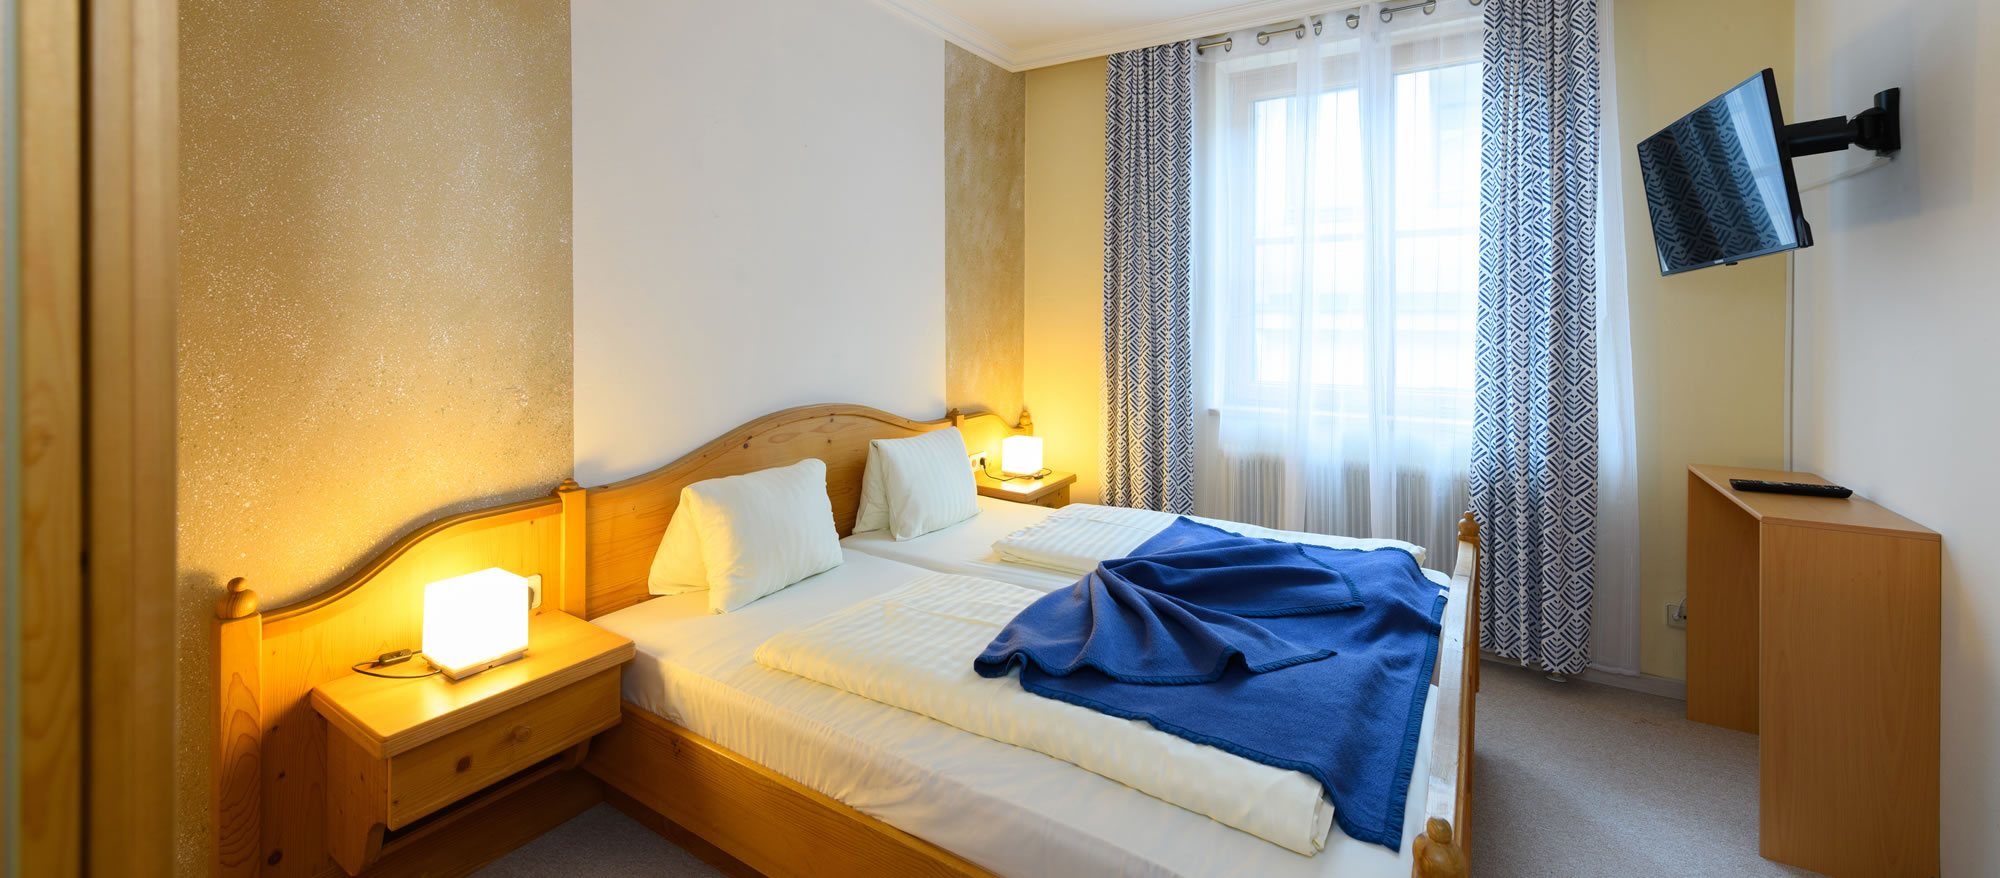 Zimmer im Hotel Landgraf in Schladming